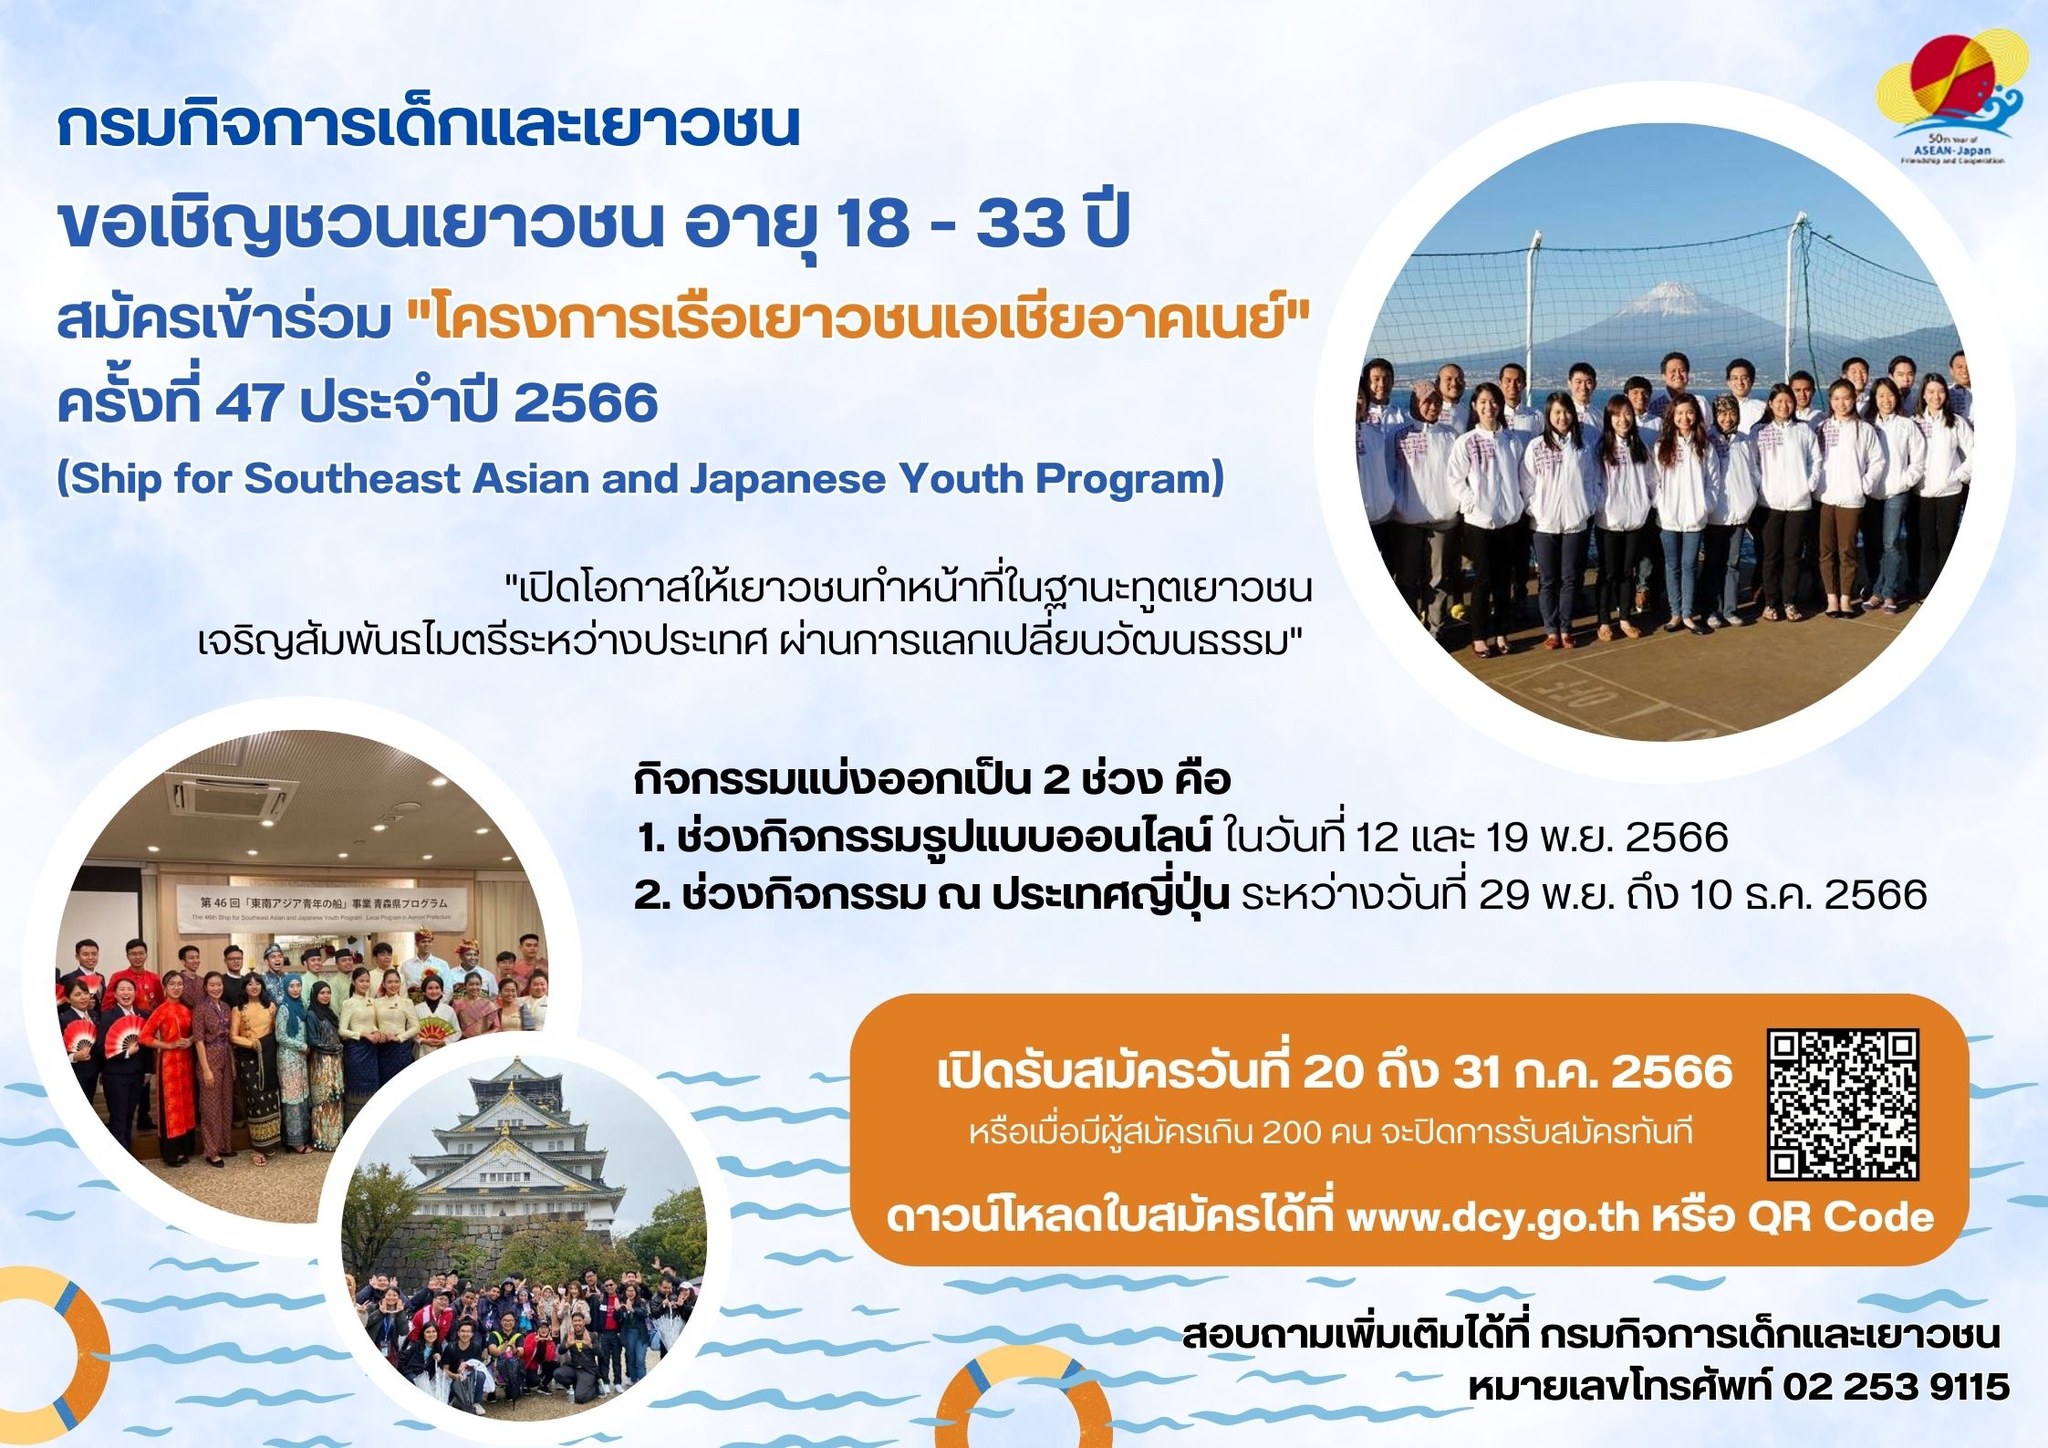 กลับมาแล้ว ! เปิดรับเยาวชนไทยเข้าร่วมโครงการเรือเยาวชนเอเชียอาคเนย์ ปี 2566